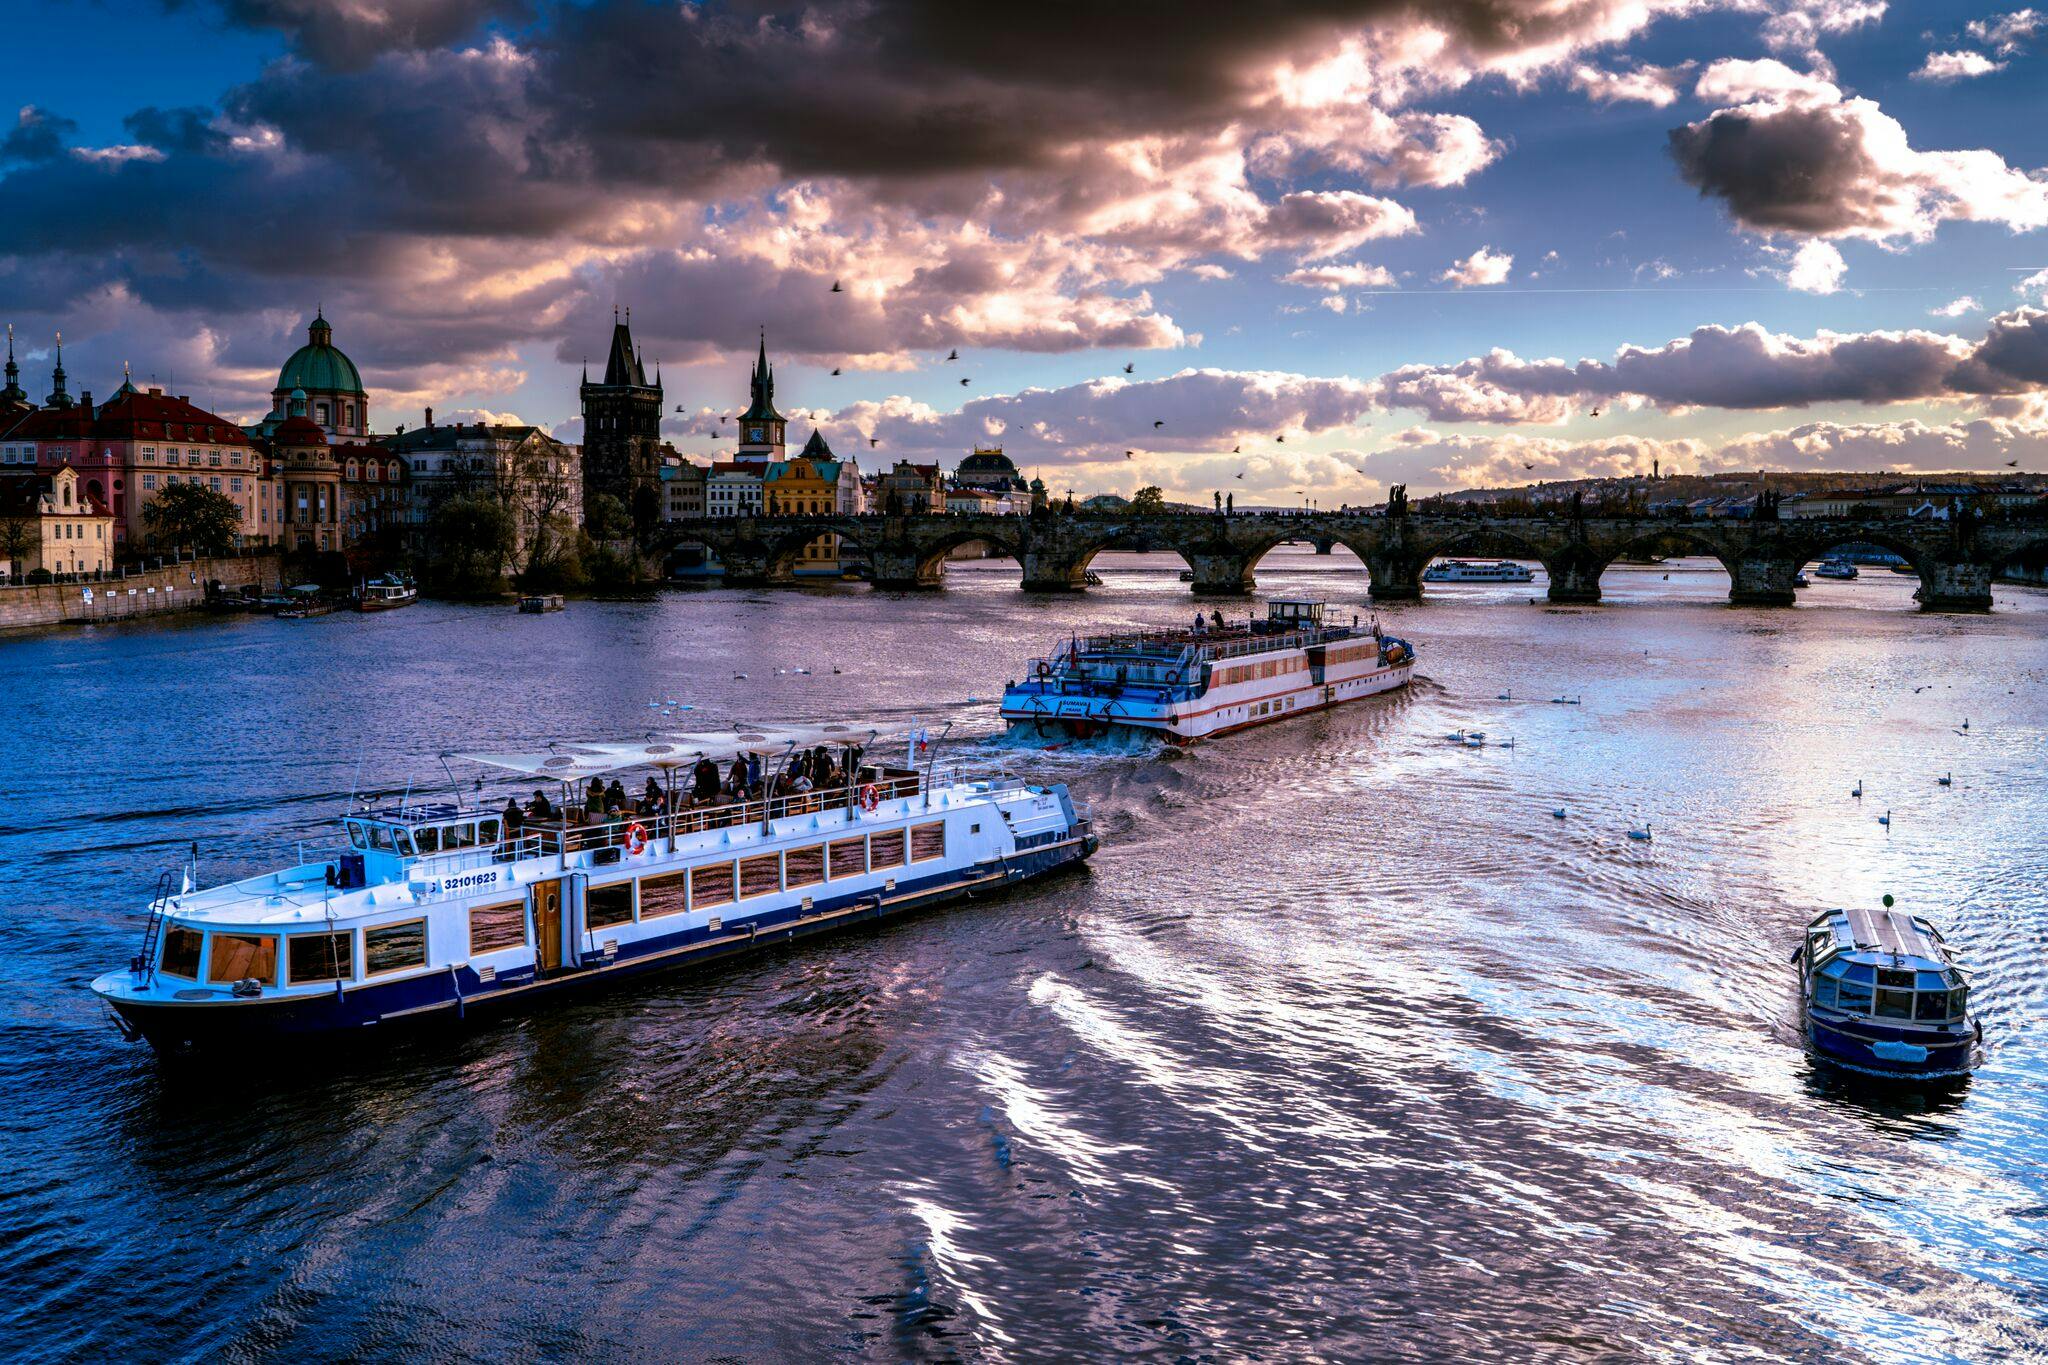 Vltava River Cruises and Tours in Prague musement